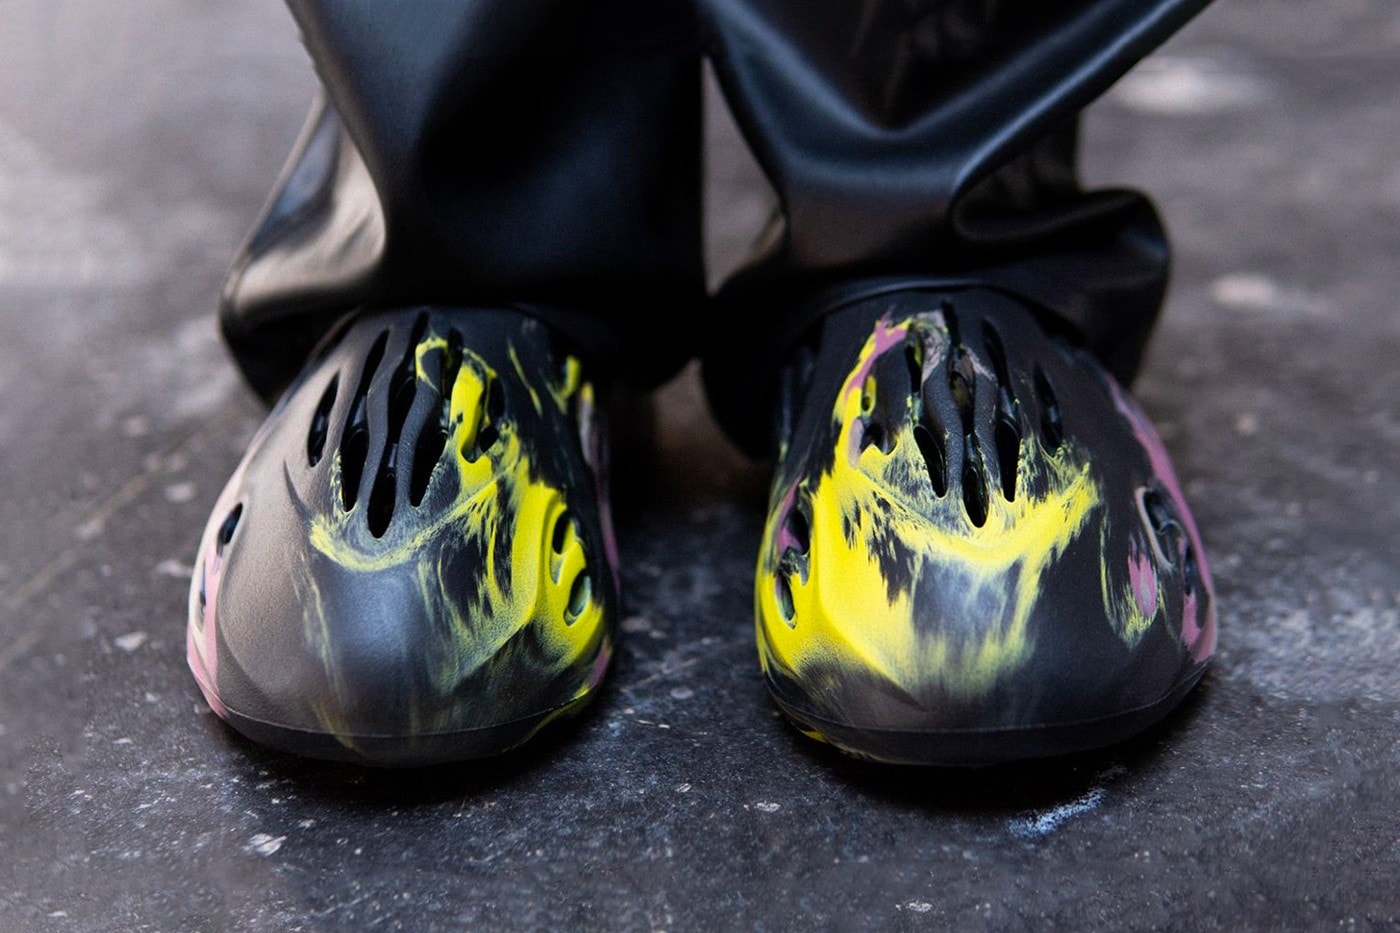 率先上腳 adidas YEEZY Foam Runner 全新配色「MX Carbon」